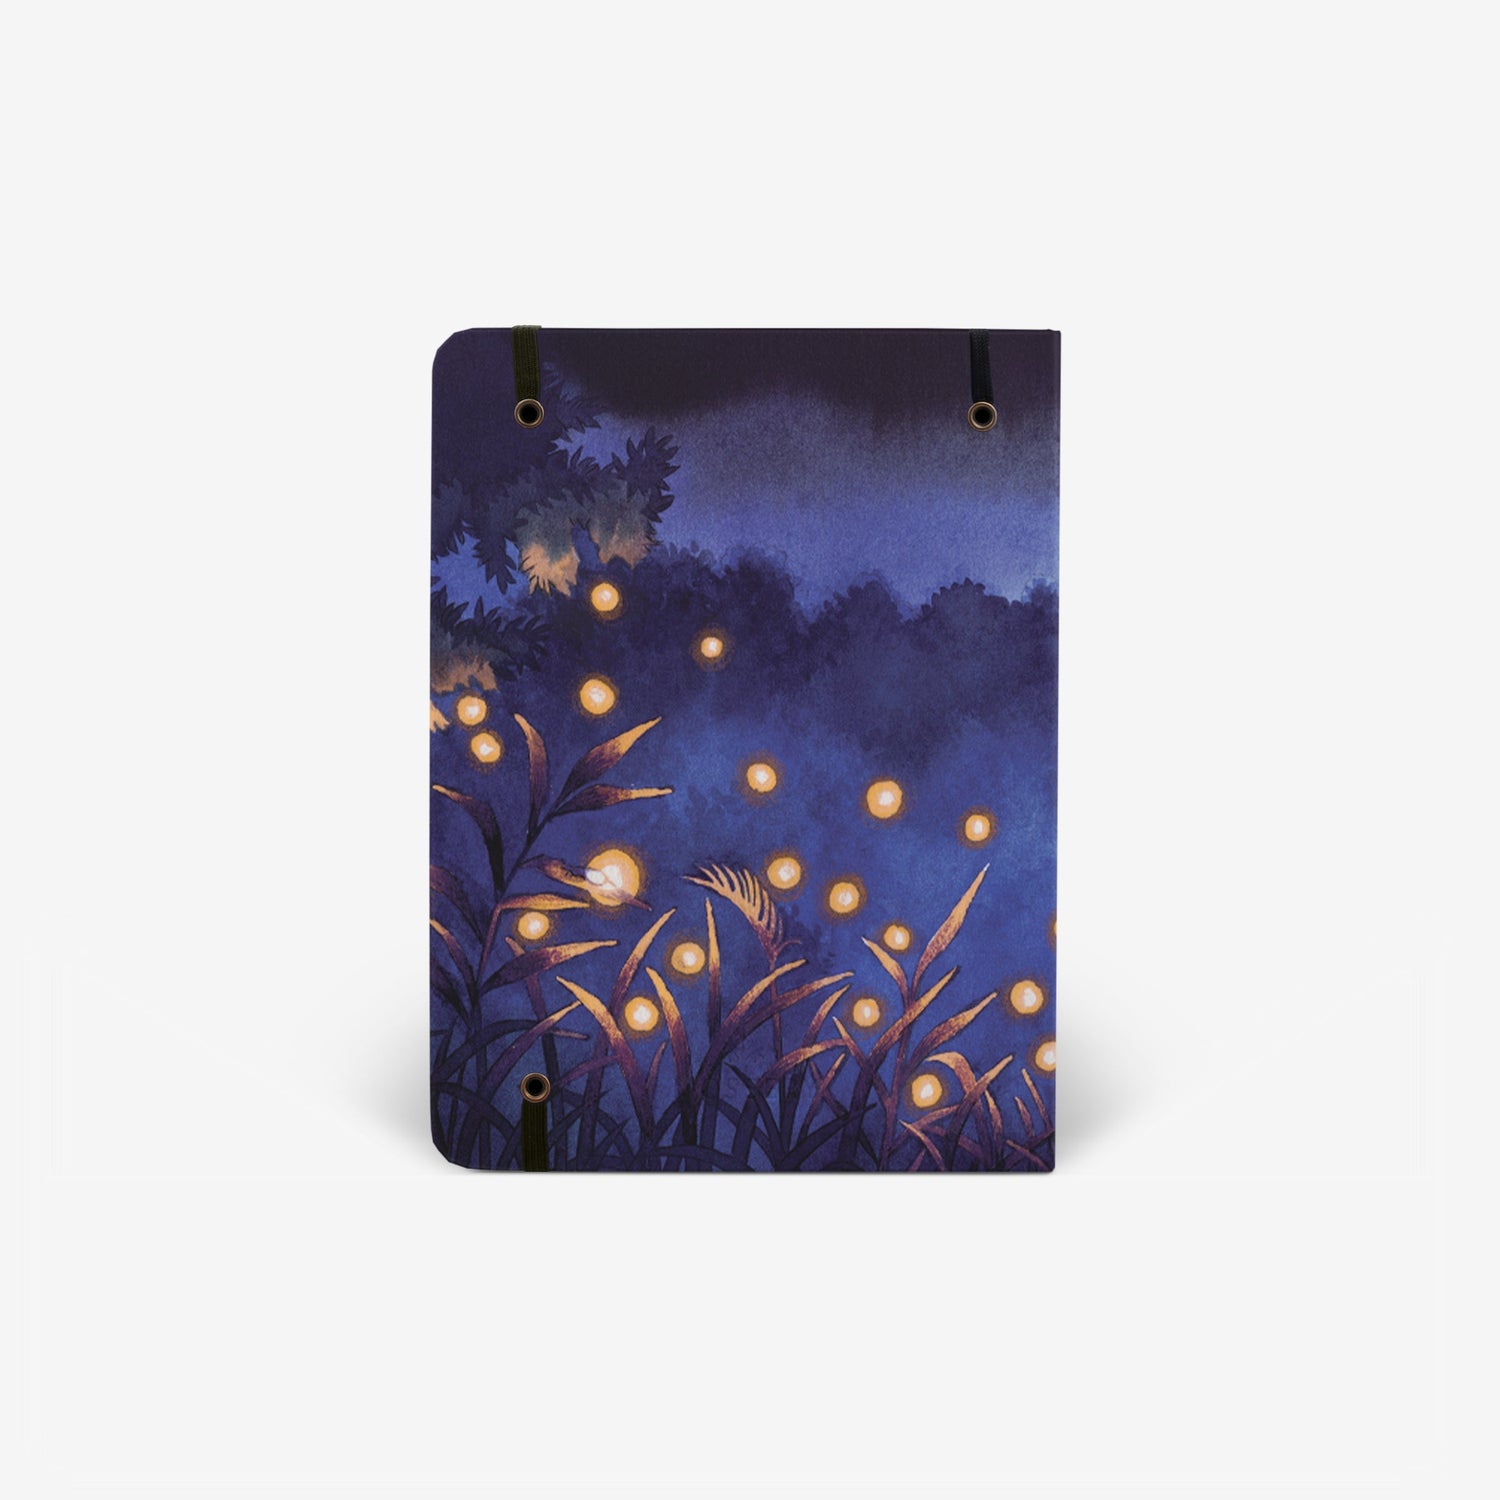 Fireflies Cover